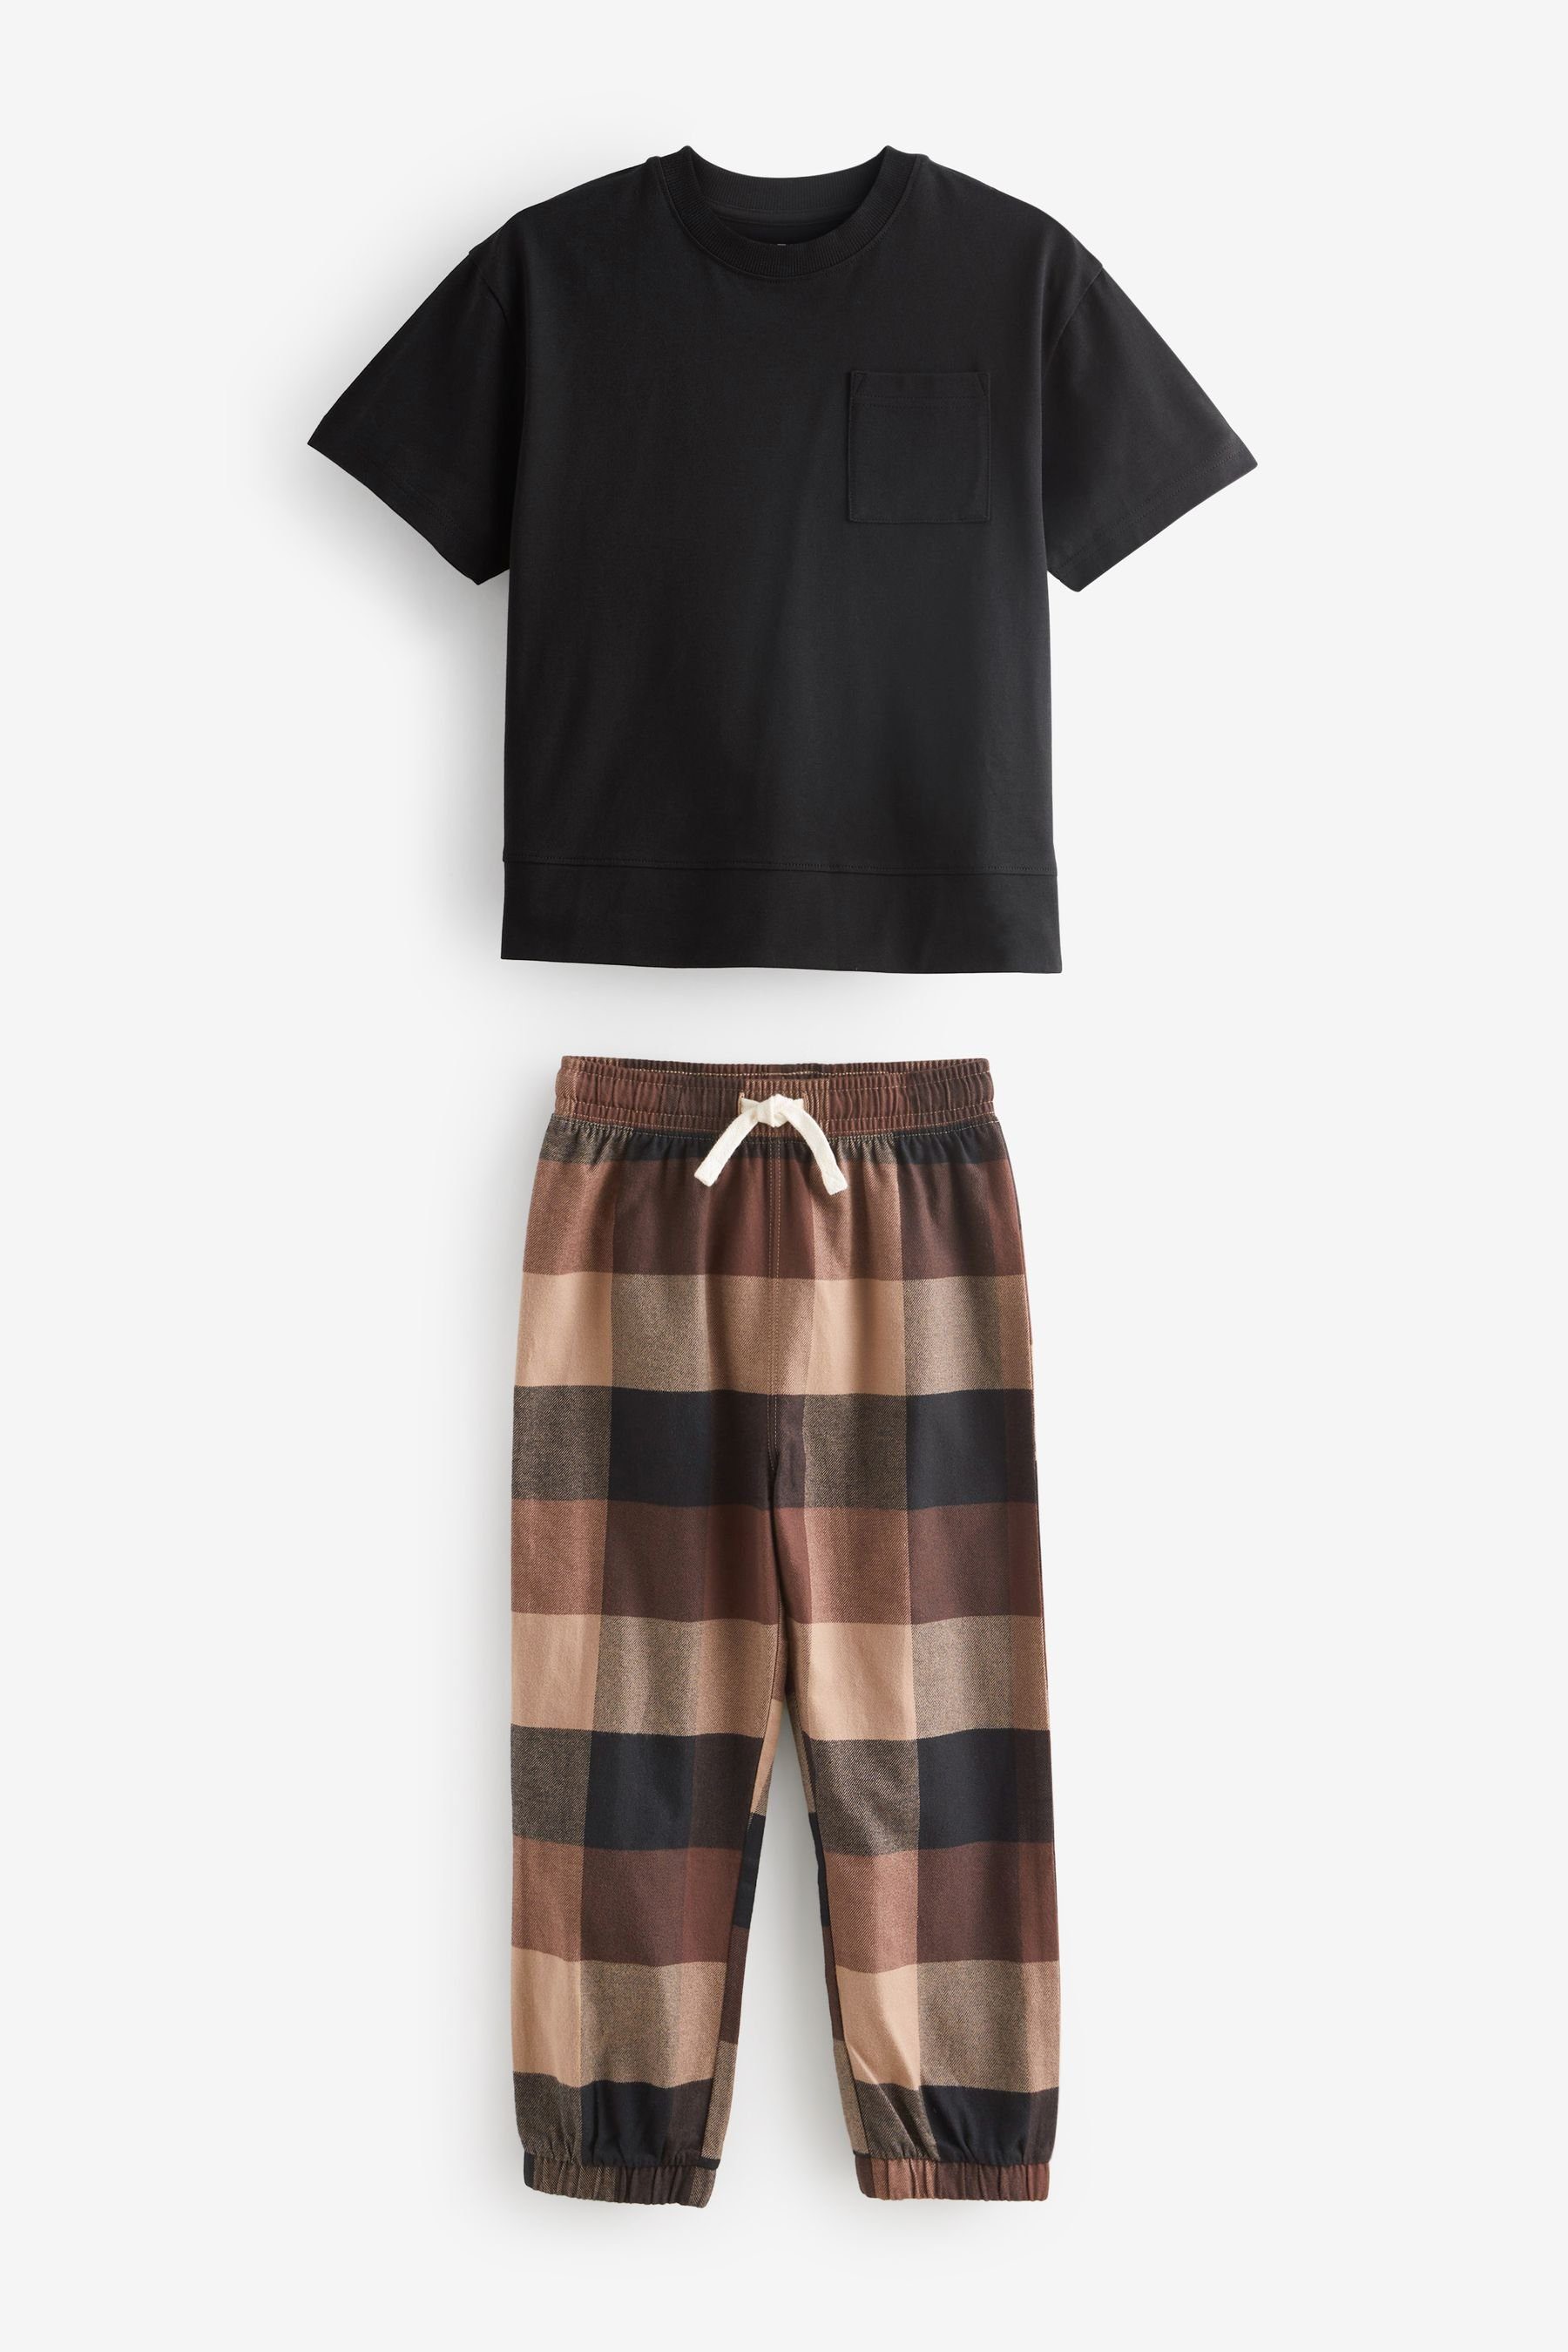 im tlg) Chocolate 2er-Pack Pyjamas (4 Next Brown/Black Pyjama Bottom Check